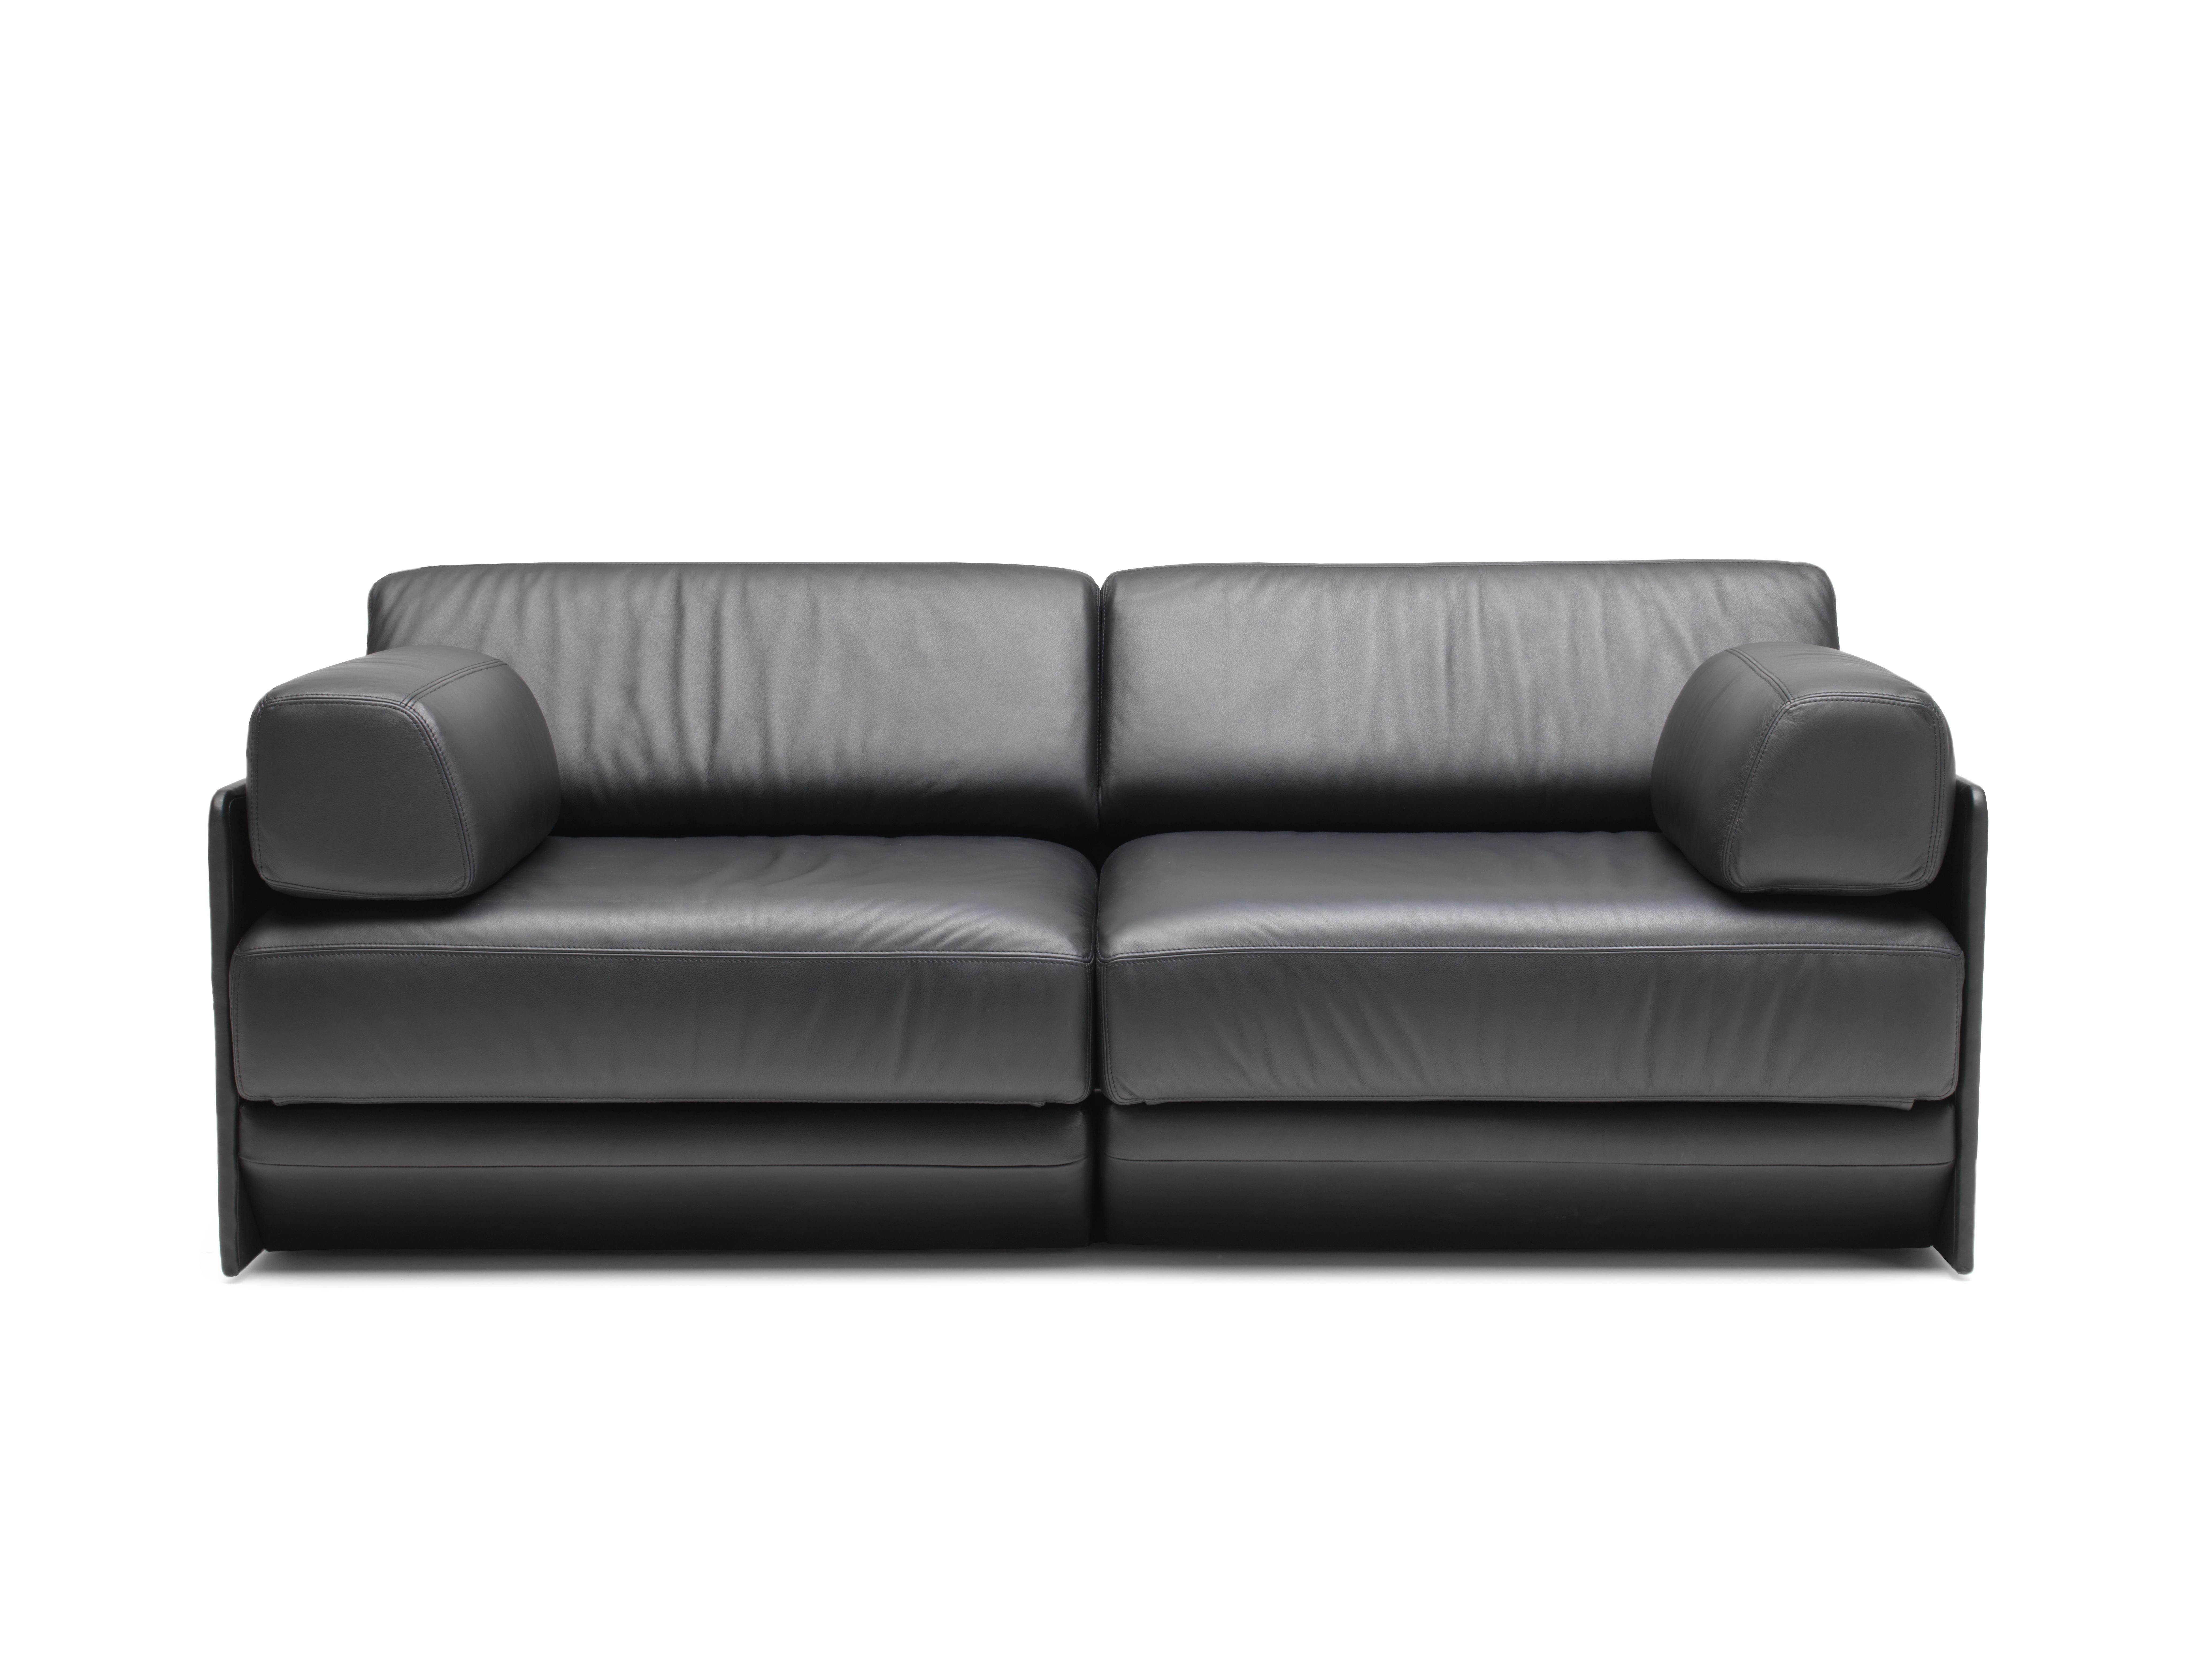 DS-76 Sofa/Bett von De Sede
Abmessungen: T 66 x B 188 x H 53 cm, mit Bettverlängerung B 225
MATERIALIEN: Gurtfederung auf Sitzrahmen aus massiver Buche, Leder.

Die Preise können sich je nach den gewählten Materialien und der Größe ändern. 

Eine